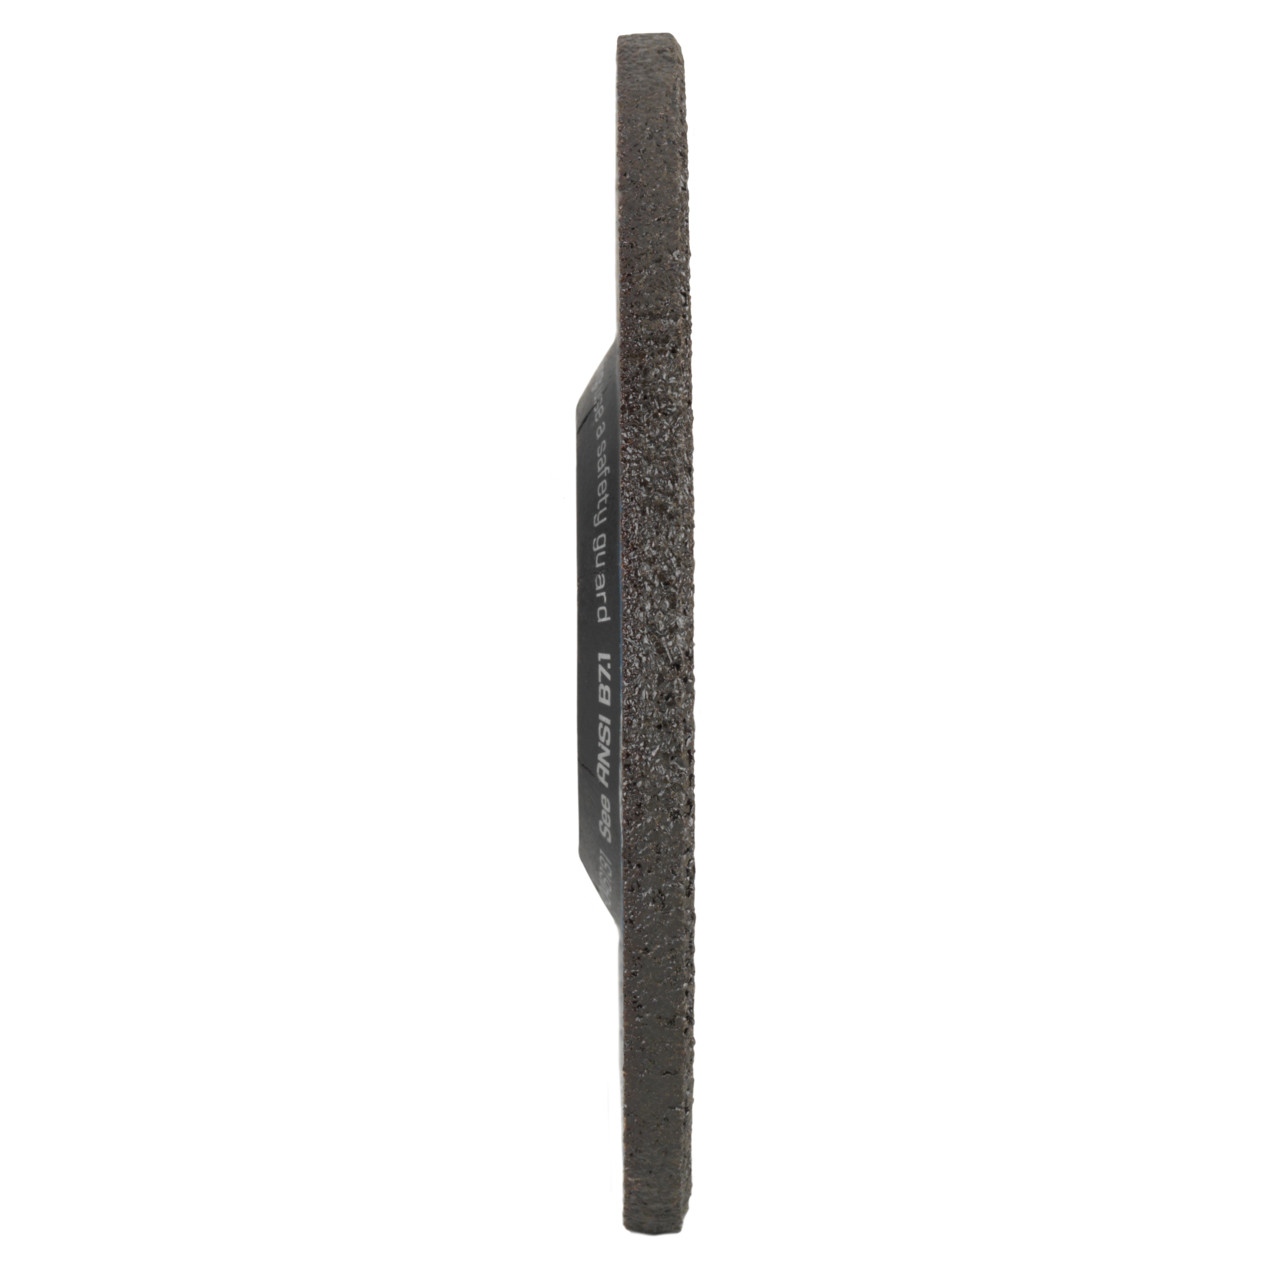 Tyrolit Grove slijpschijf DxUxH 125x7x22,23 2in1 voor staal en roestvast staal, vorm: 27 - offset uitvoering, Art. 34046131